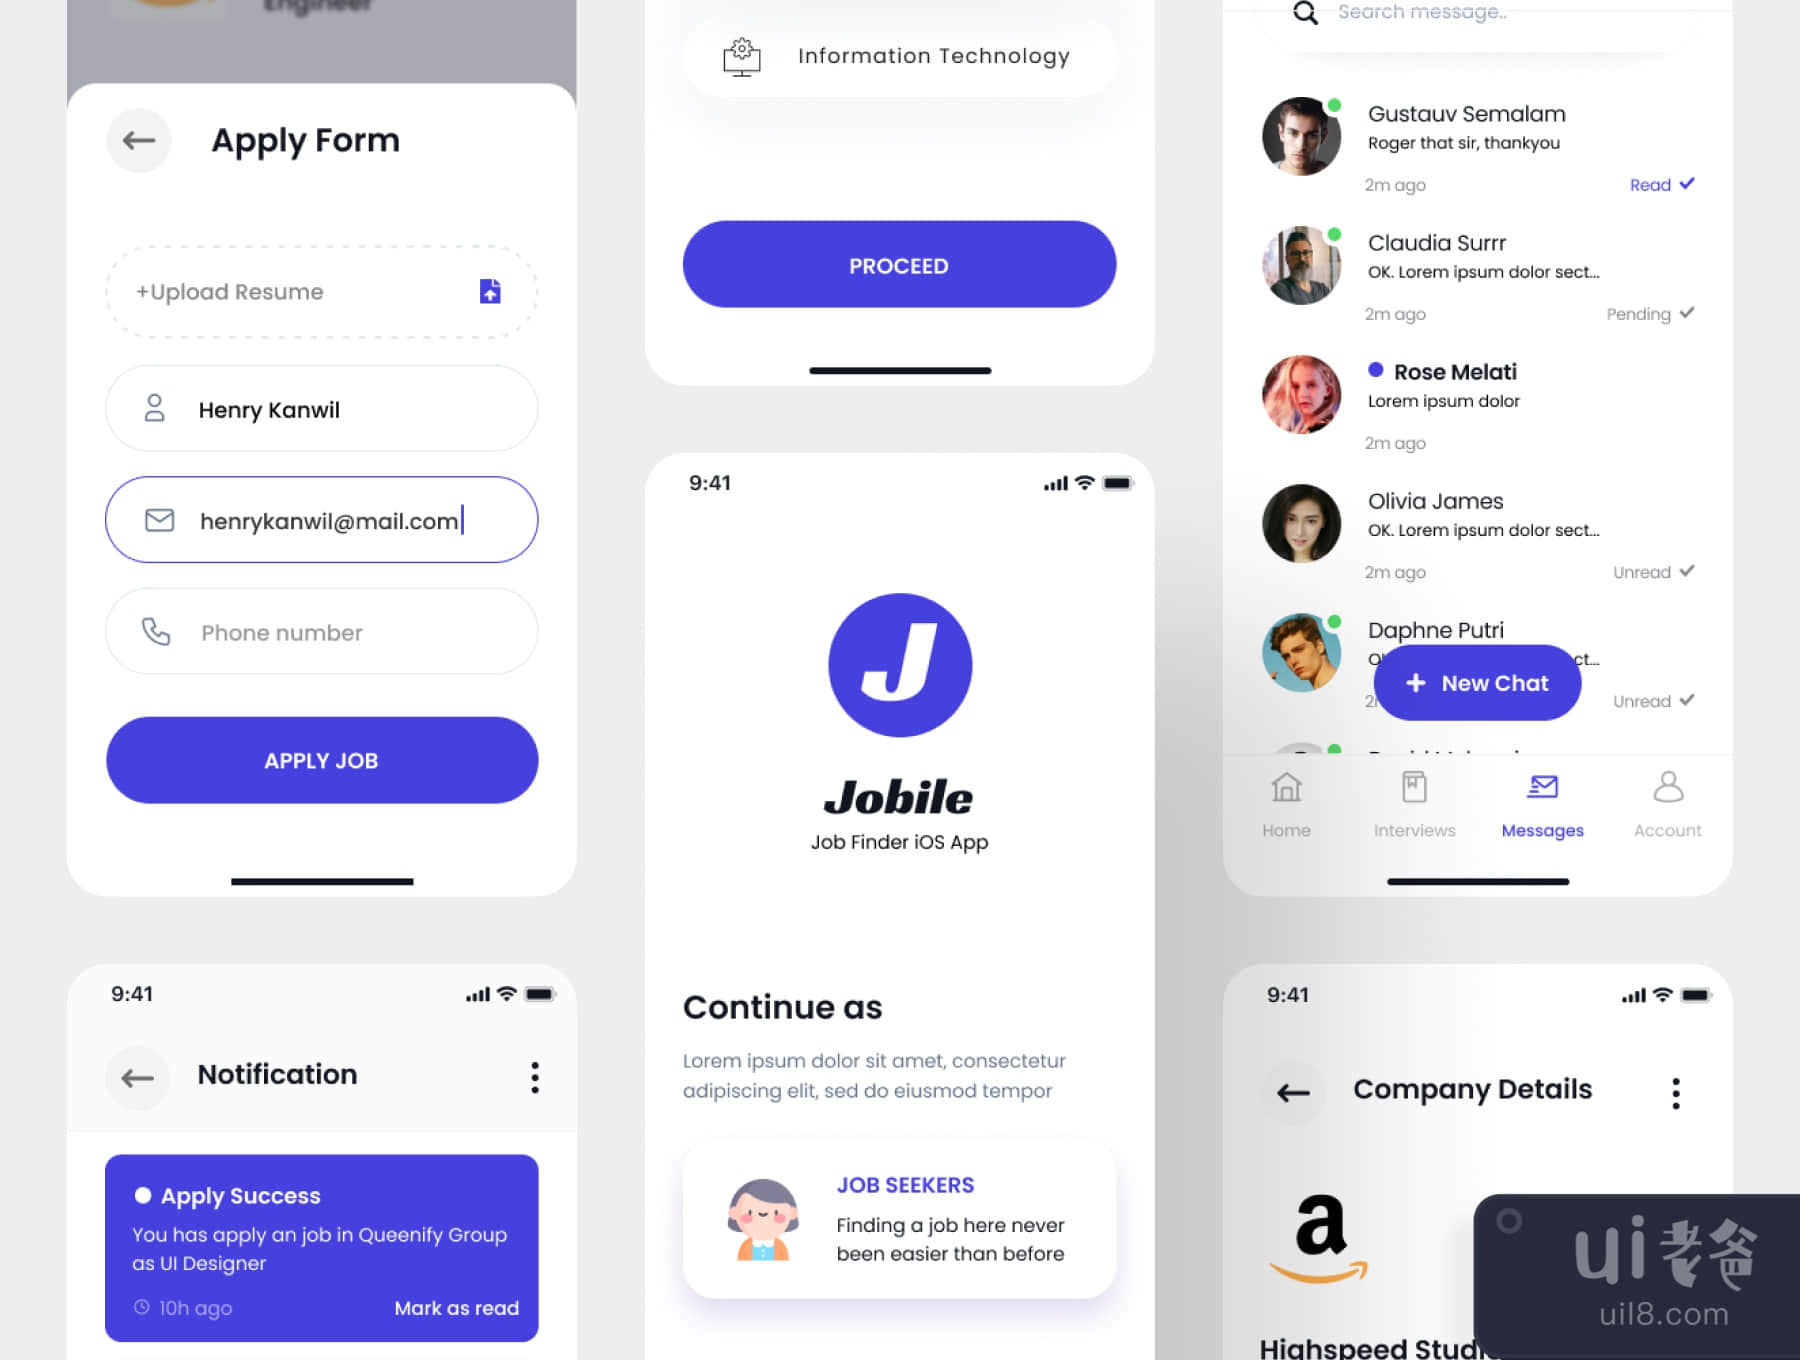 Jobile - 工作搜索器应用程序Ui Kit (Jobile - Job Finder App Ui Kit)插图